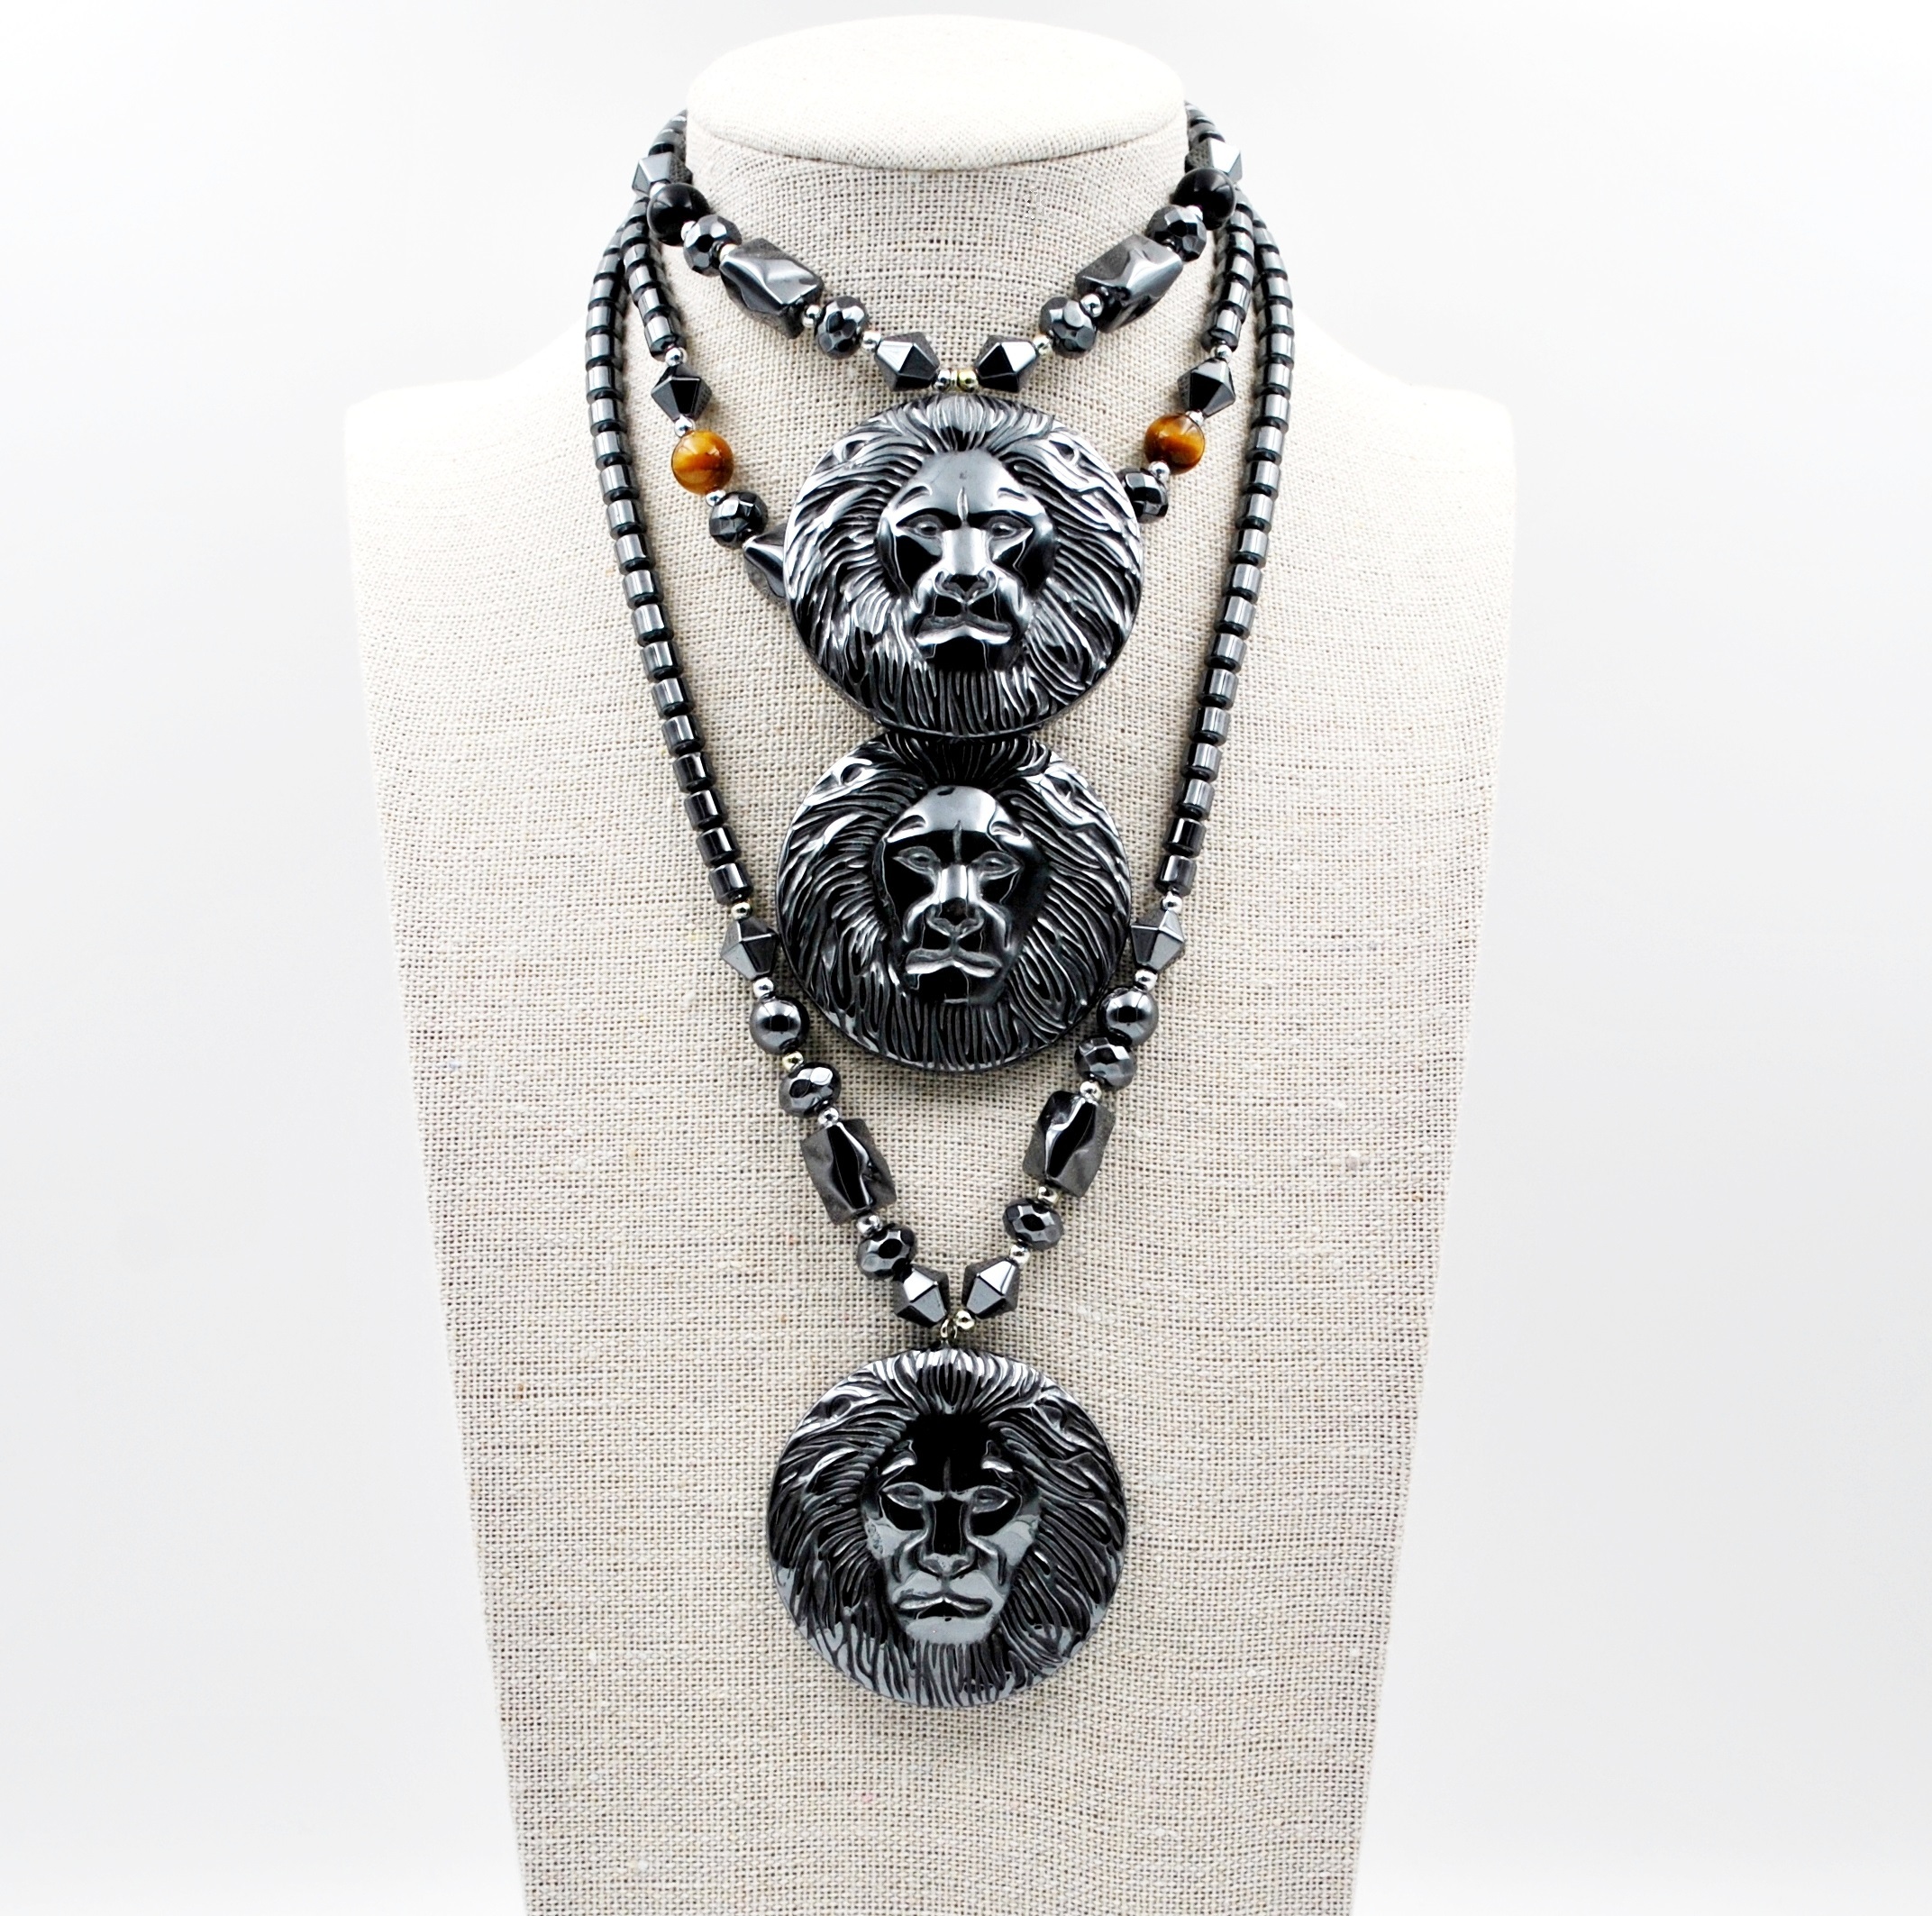 Dozen Large Lion Head Hematite Necklaces #HN-80455